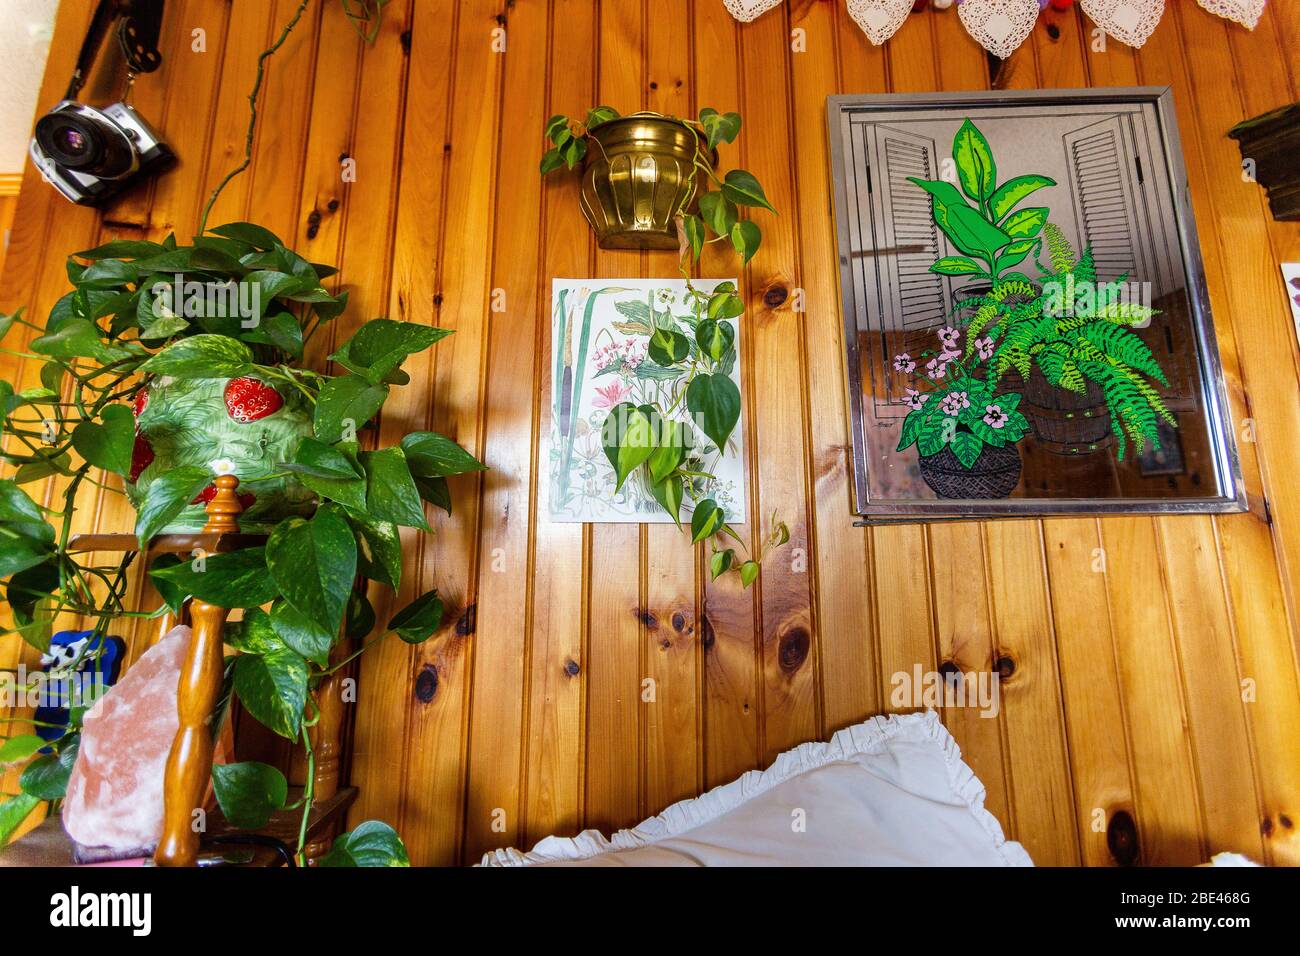 Beau mur de bois recouvert de plantes vertes et images de plantes vertes illuminées Banque D'Images